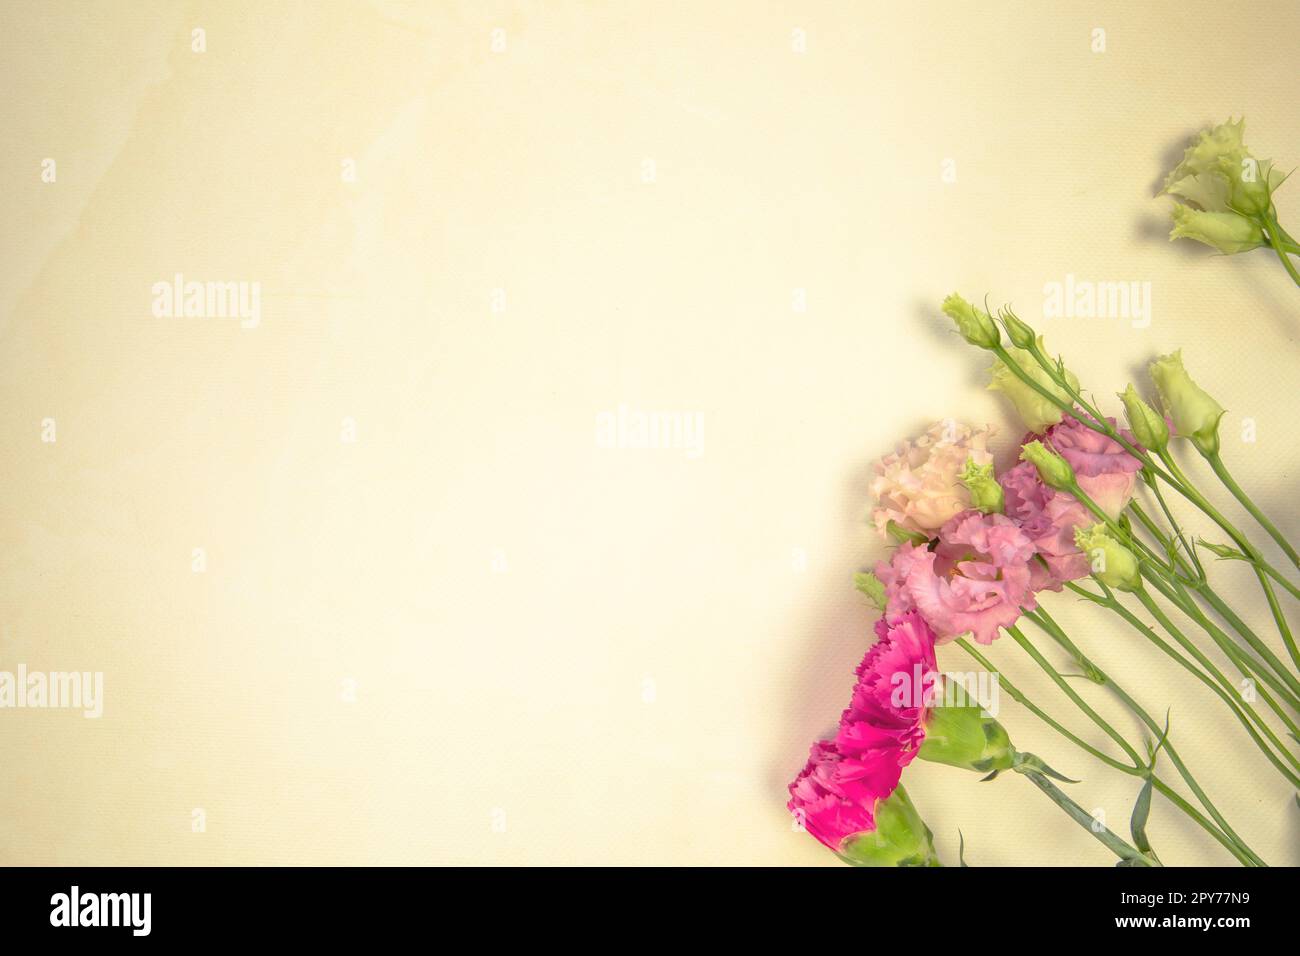 Blumendesign aus verschiedenen frischen Frühlingsblumen auf gelbem Hintergrund. Schöne Lichtreflexionen. Draufsicht. wildblumen flach liegend Kopierraum, Frühling, Sommer Naturkonzept Stockfoto